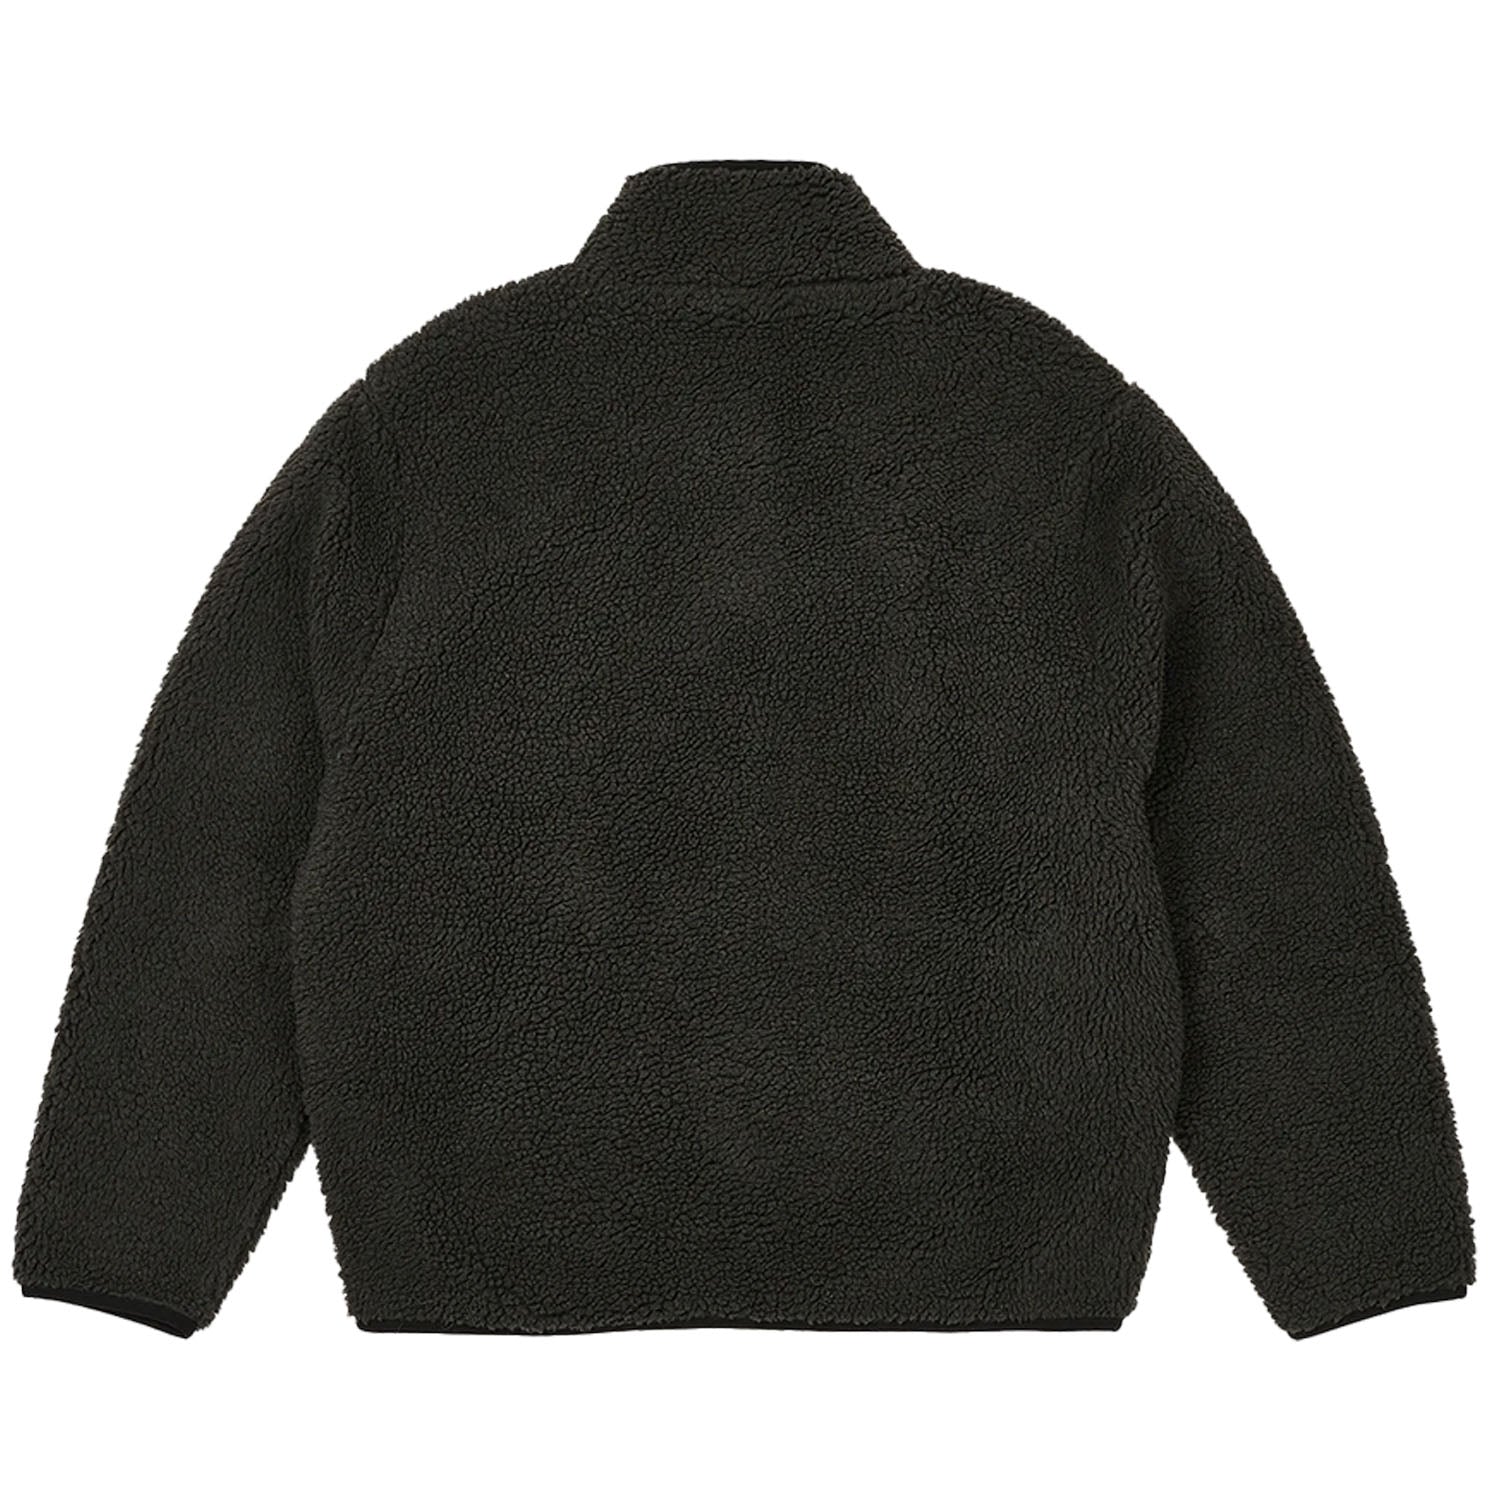 TTT Zip Fleece (Charcoal/Black)